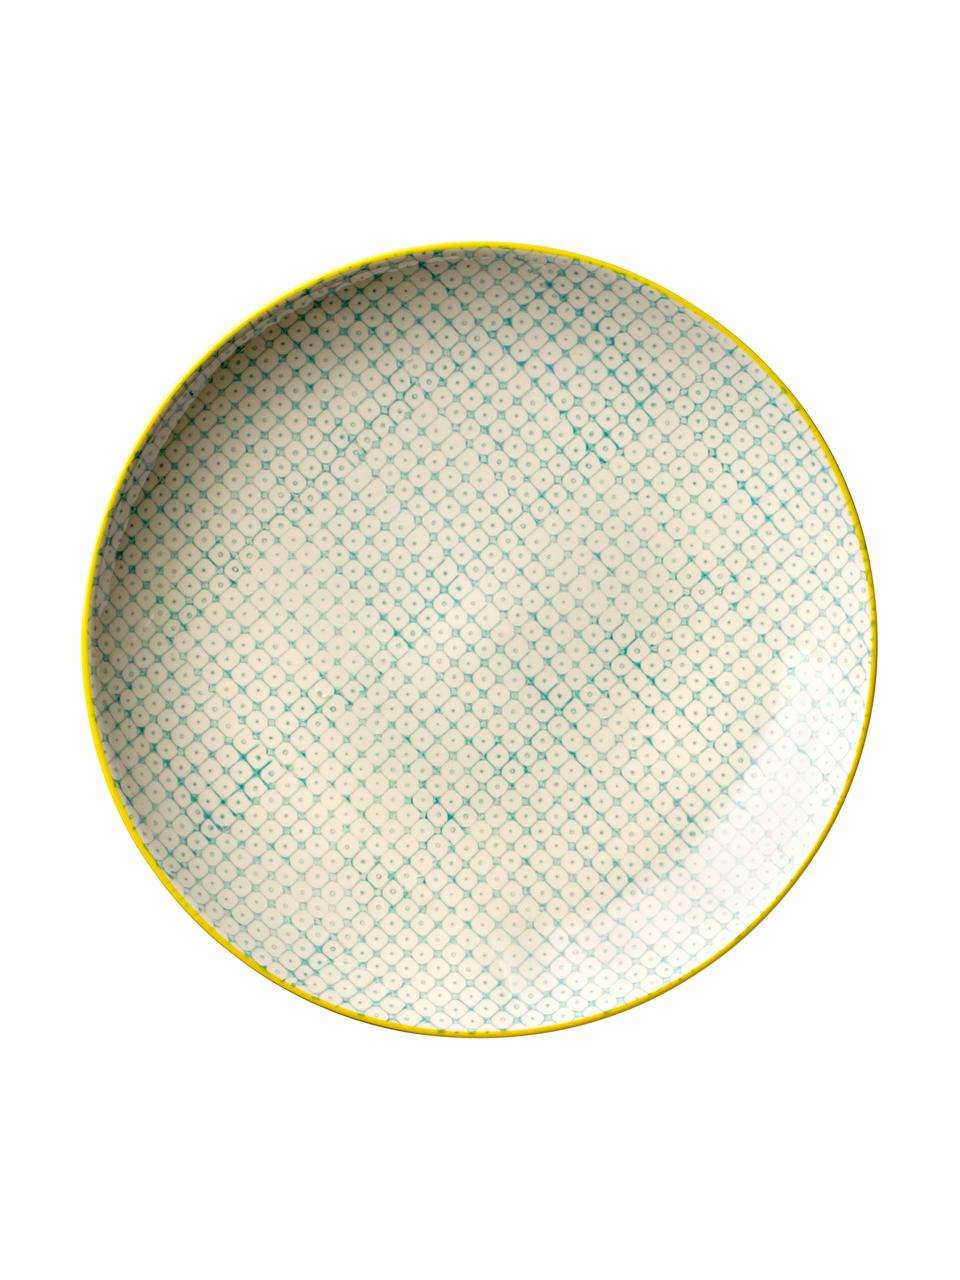 Handbeschilderde ontbijtbord Carla met een speels patroon, 3-delig, Keramiek, Rood, groen, blauw, Ø 20 cm